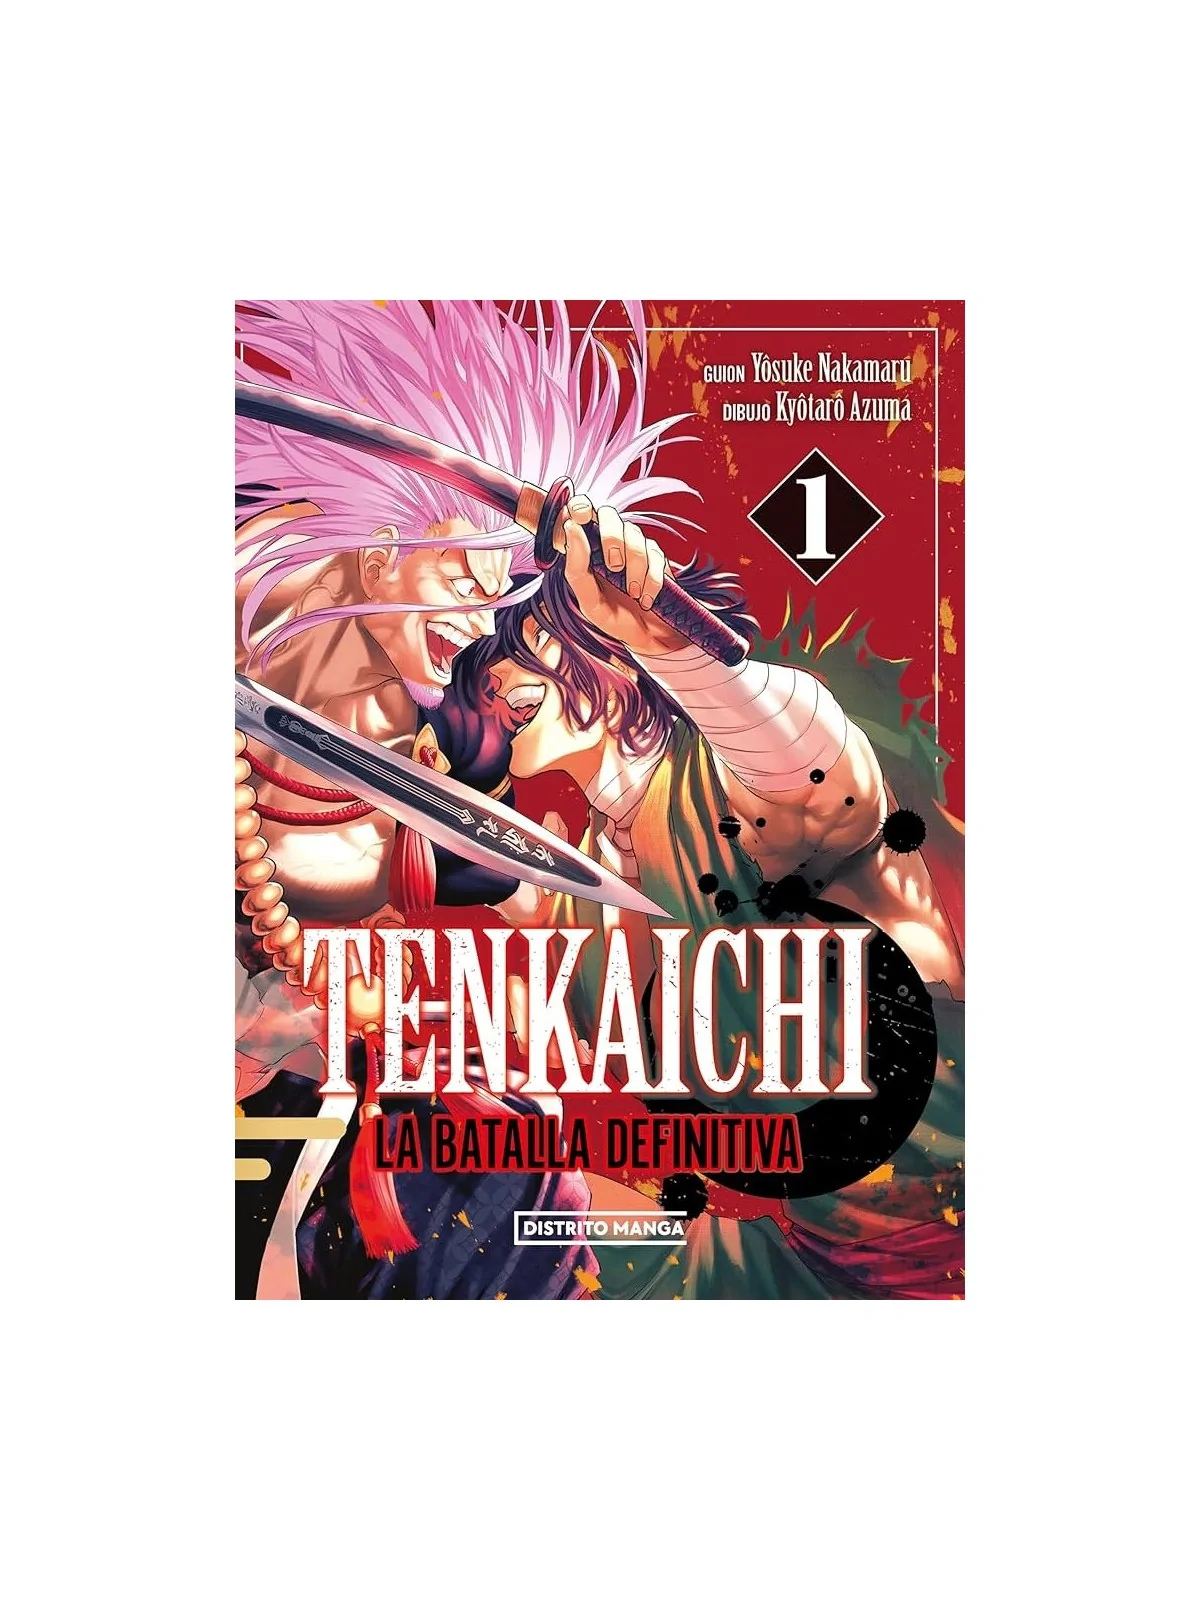 Comprar Tenkaichi: La Batalla Definitiva 01 barato al mejor precio 9,4